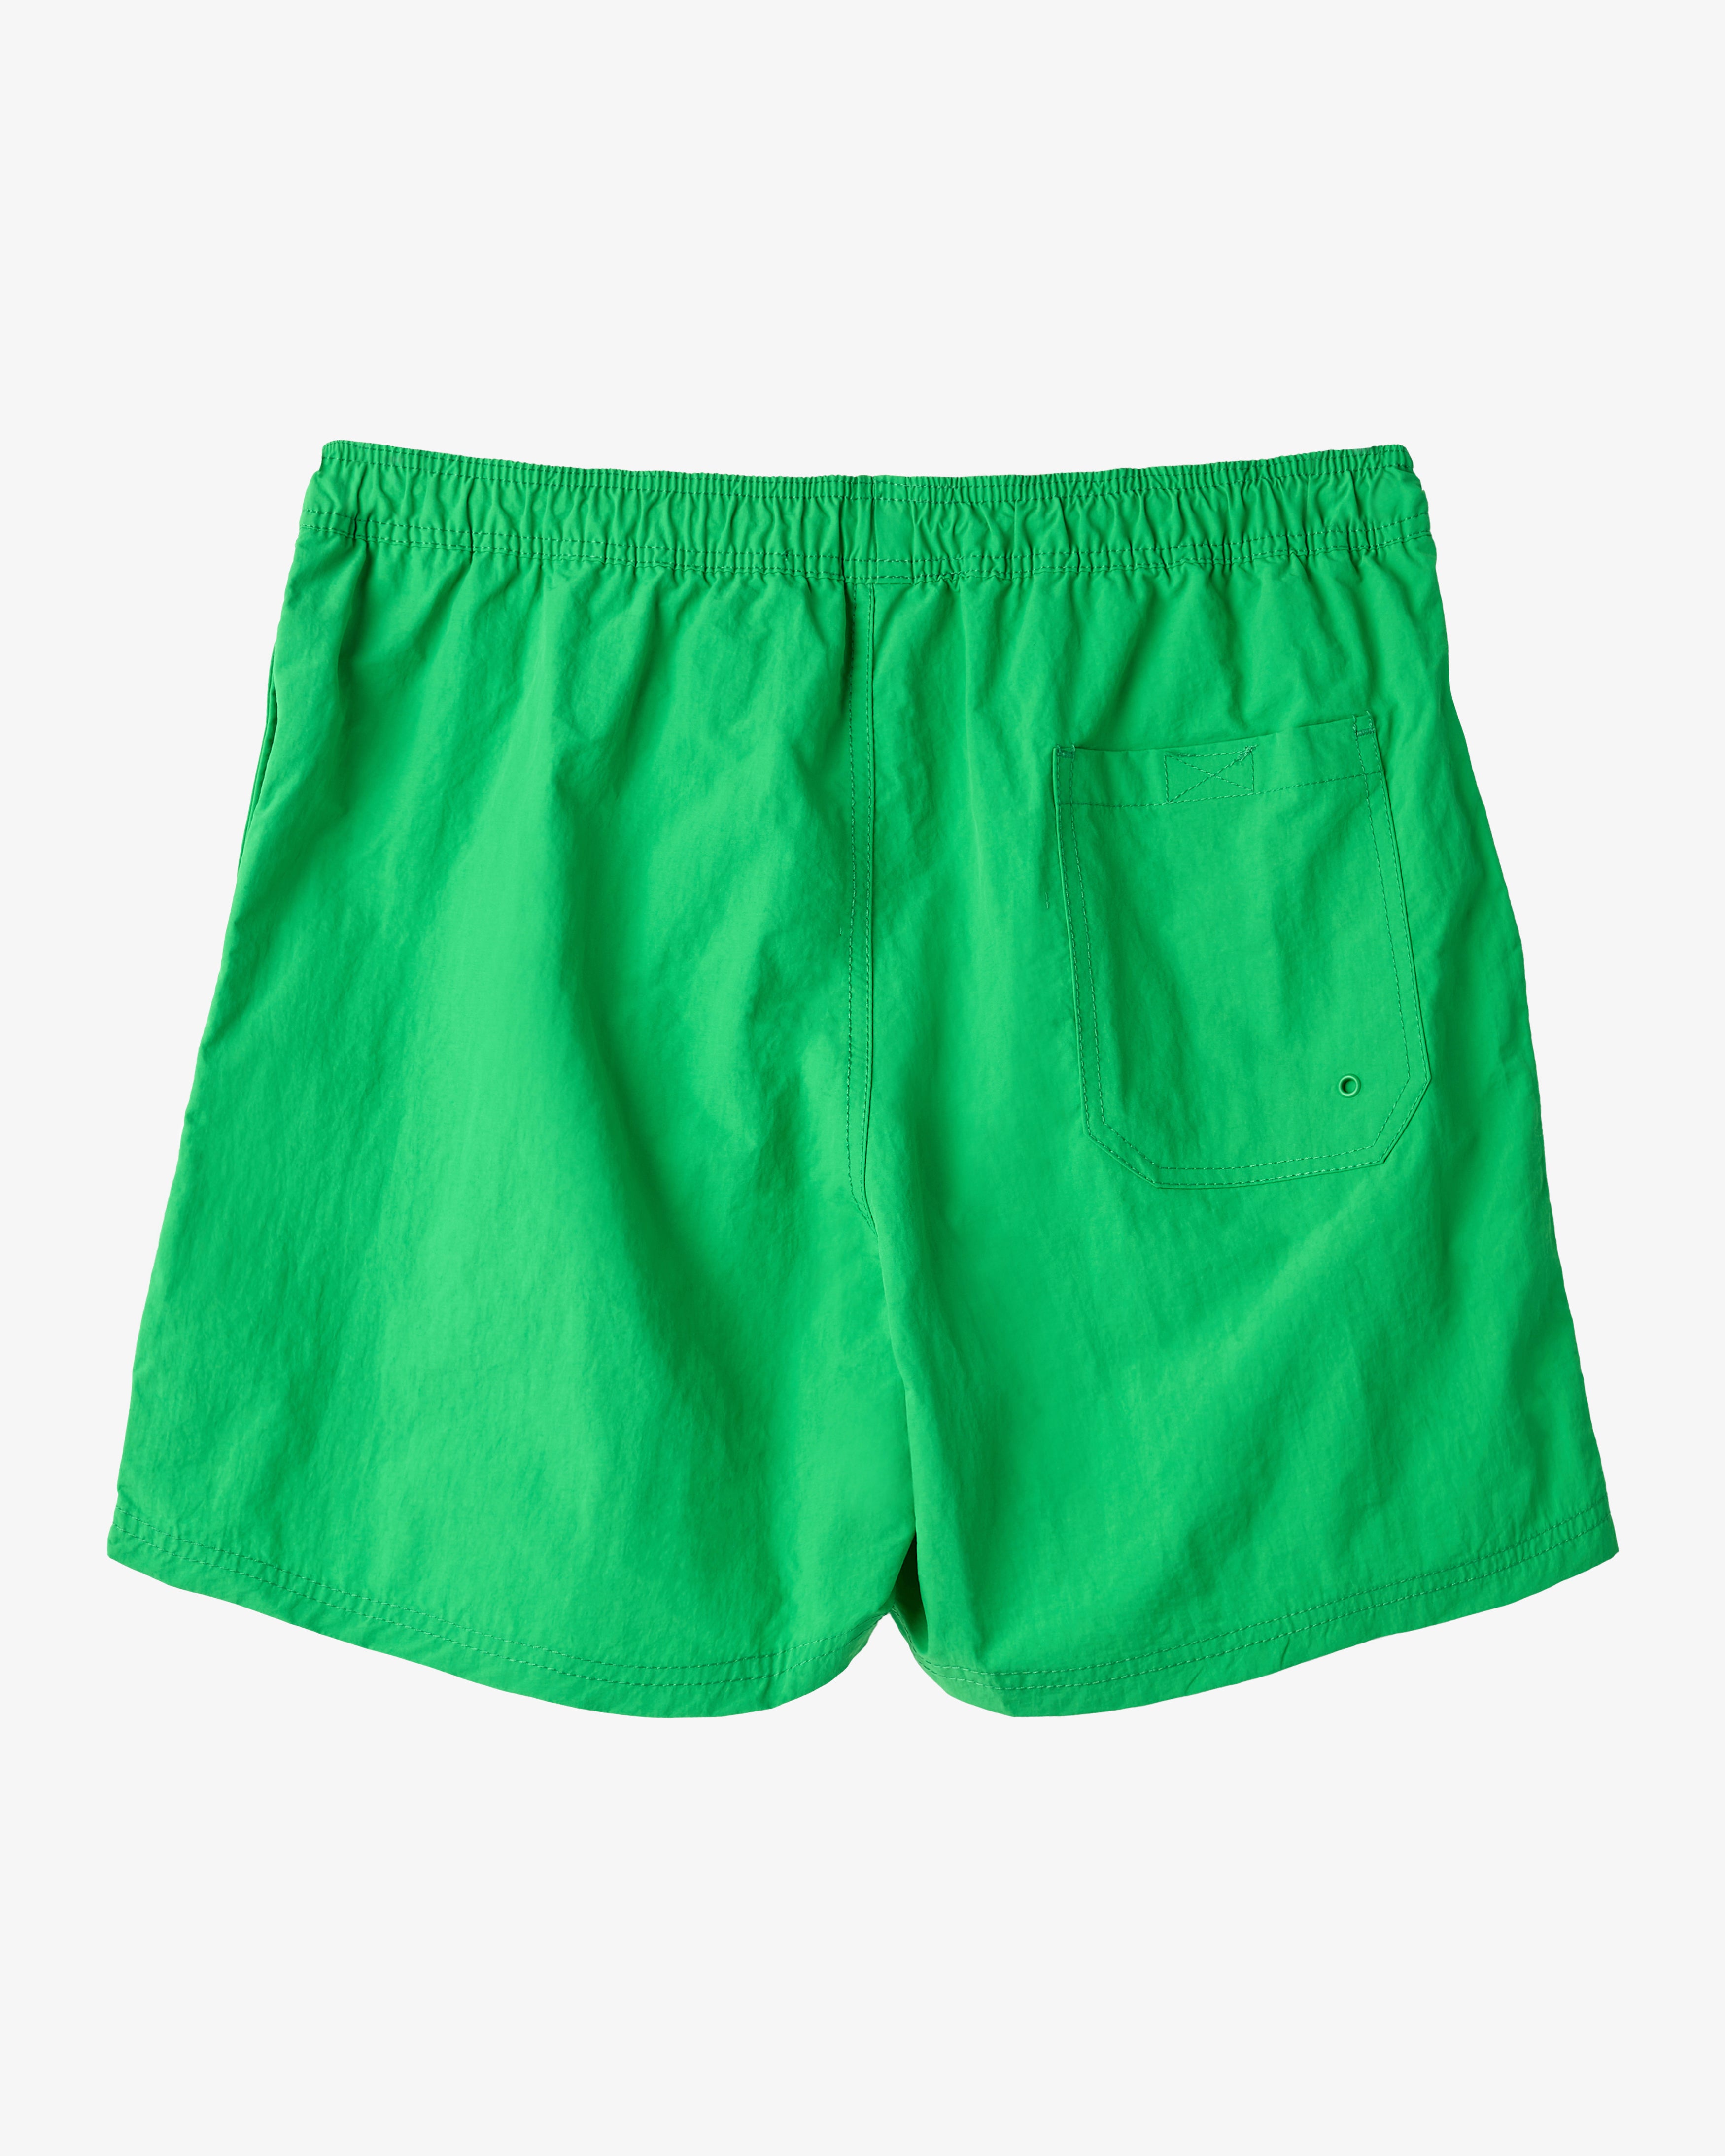 H2O Basic Leisure Badeshorts Shorts 3006 Grass Green